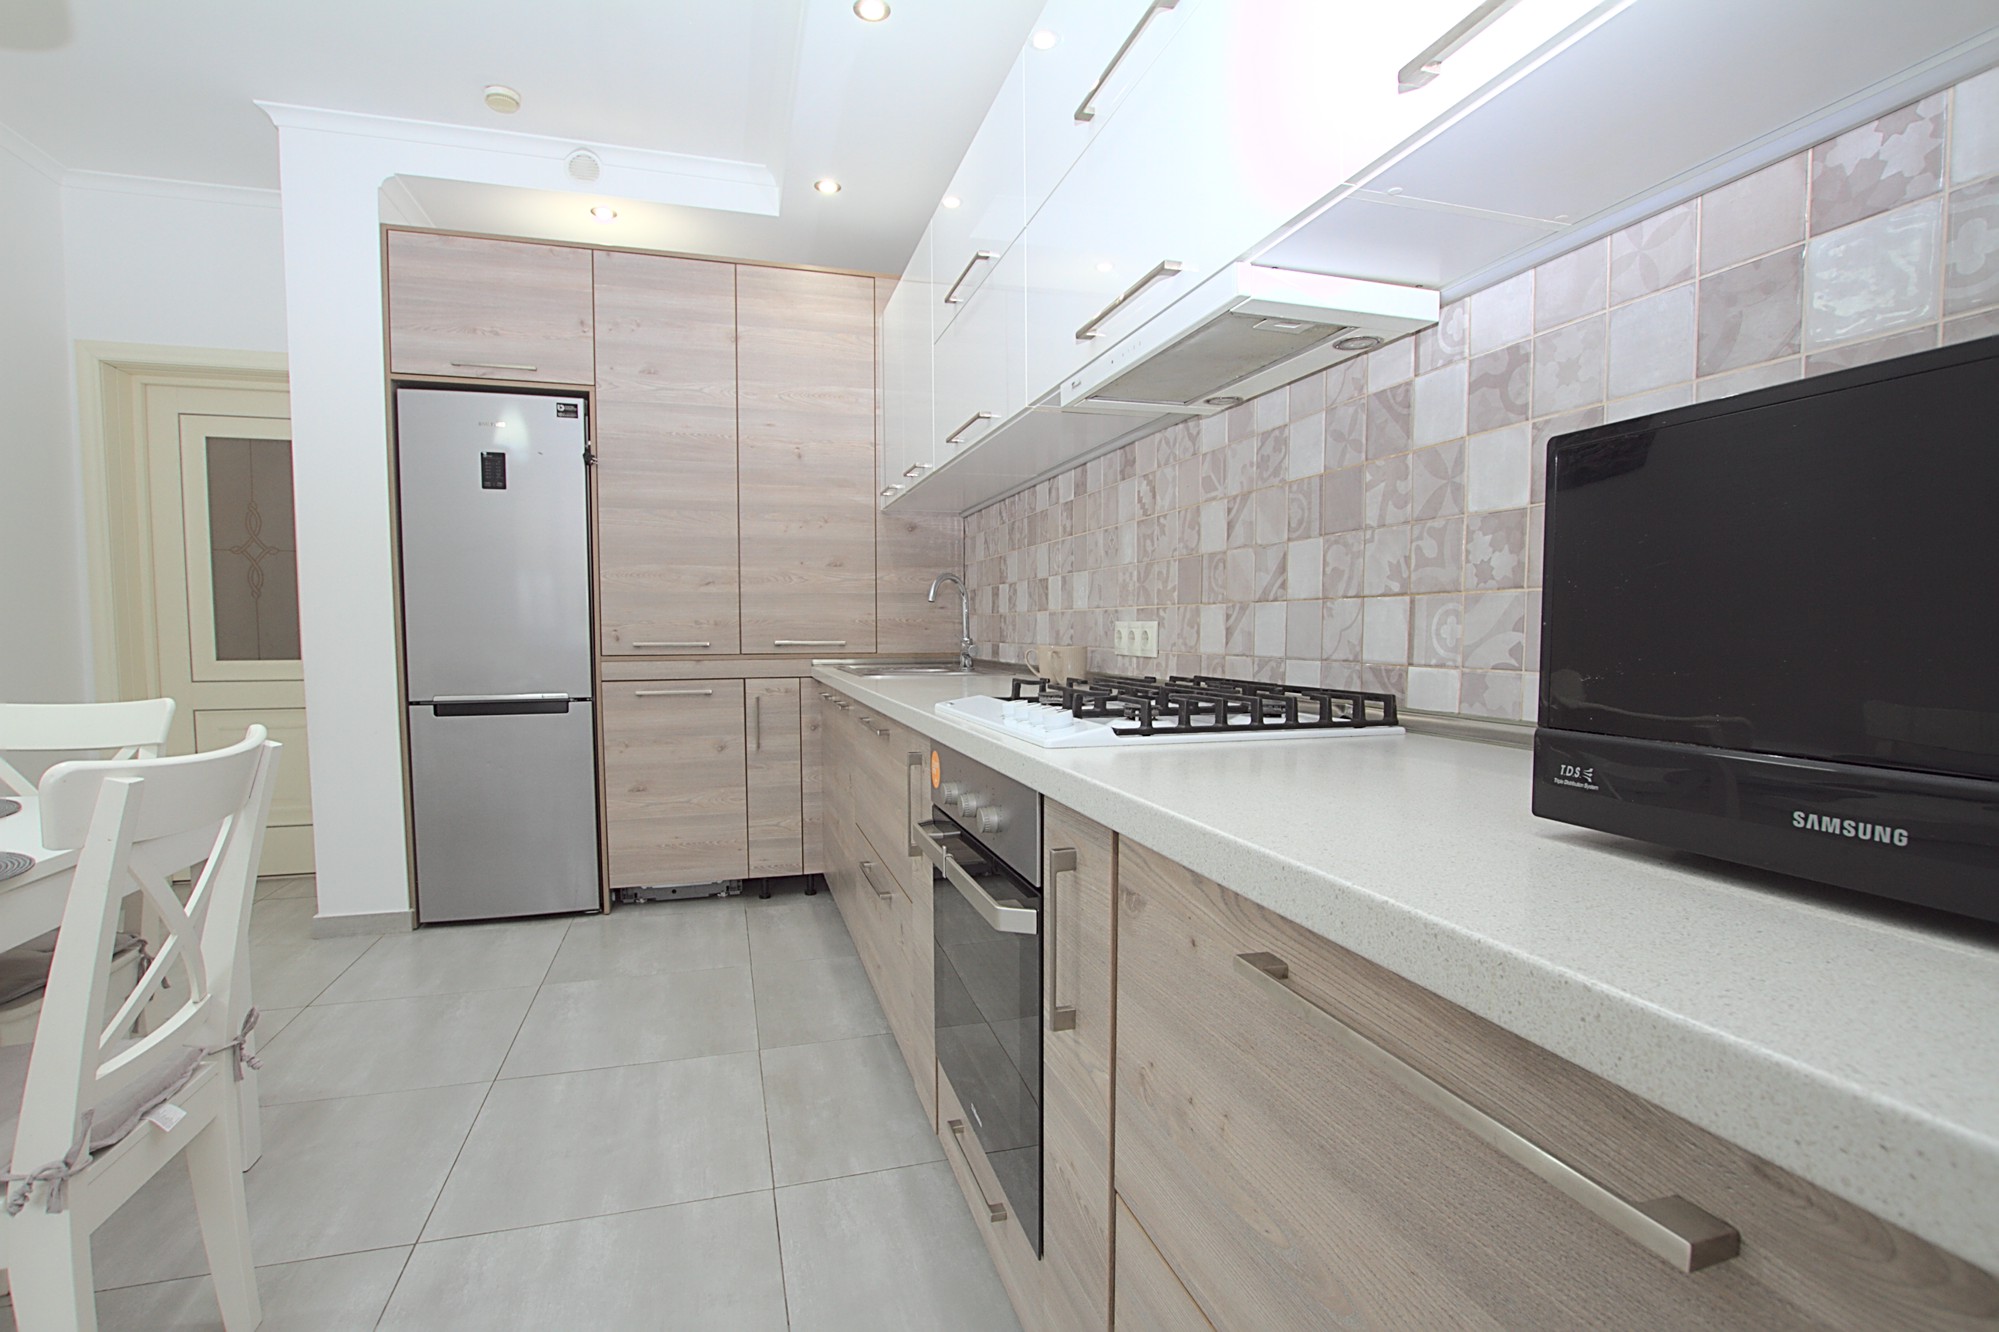 Apartment for rent in Chisinau, Botanica: 3 rooms, 1 bedroom, 80 m²